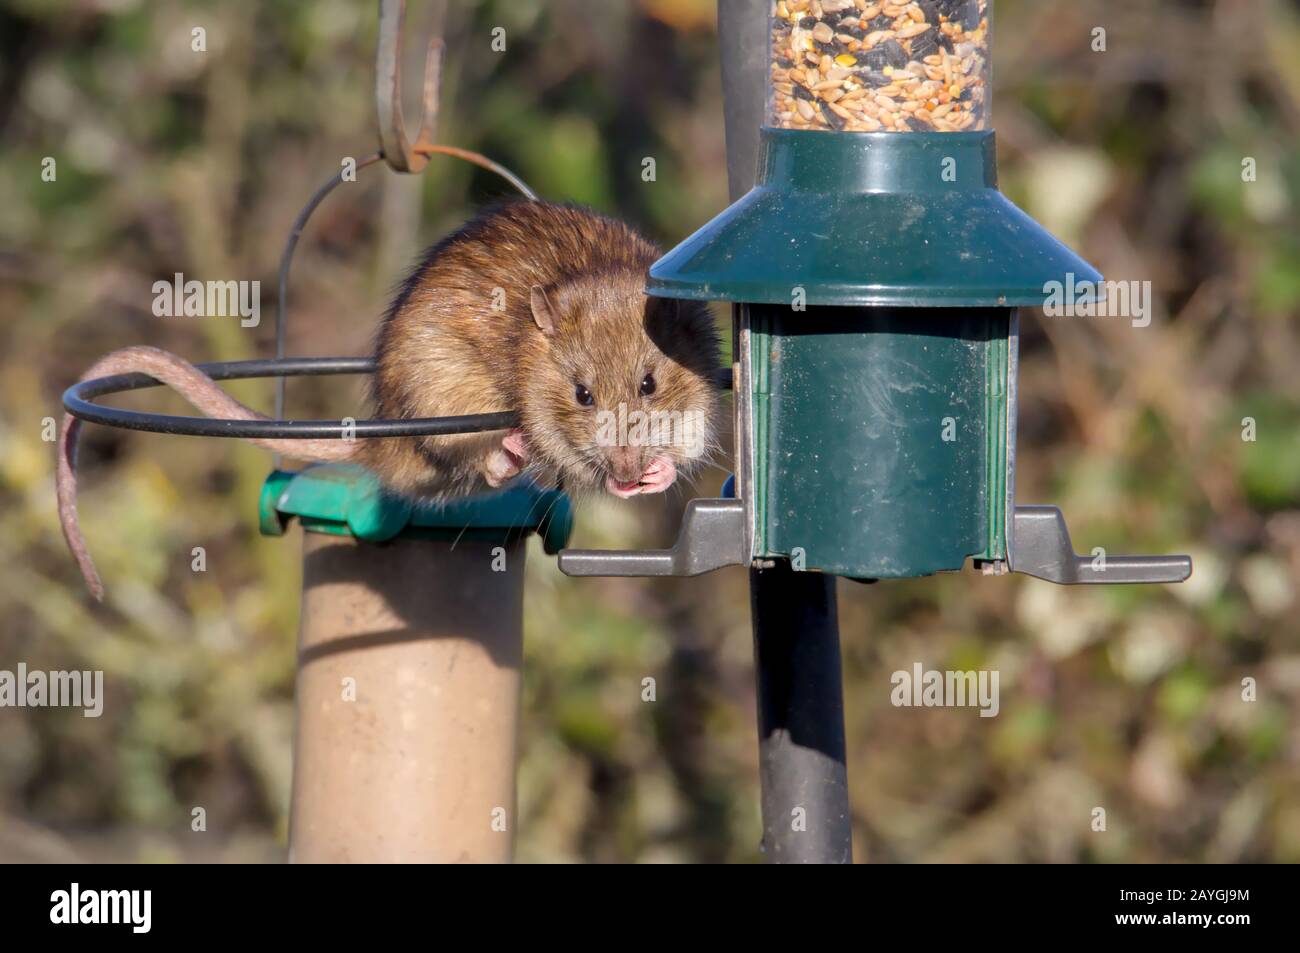 Rata marrón mirando la alimentación de la cámara desde una semilla de picado del alimentador de pájaros. Tomada en Keyhaven, Reino Unido Foto de stock